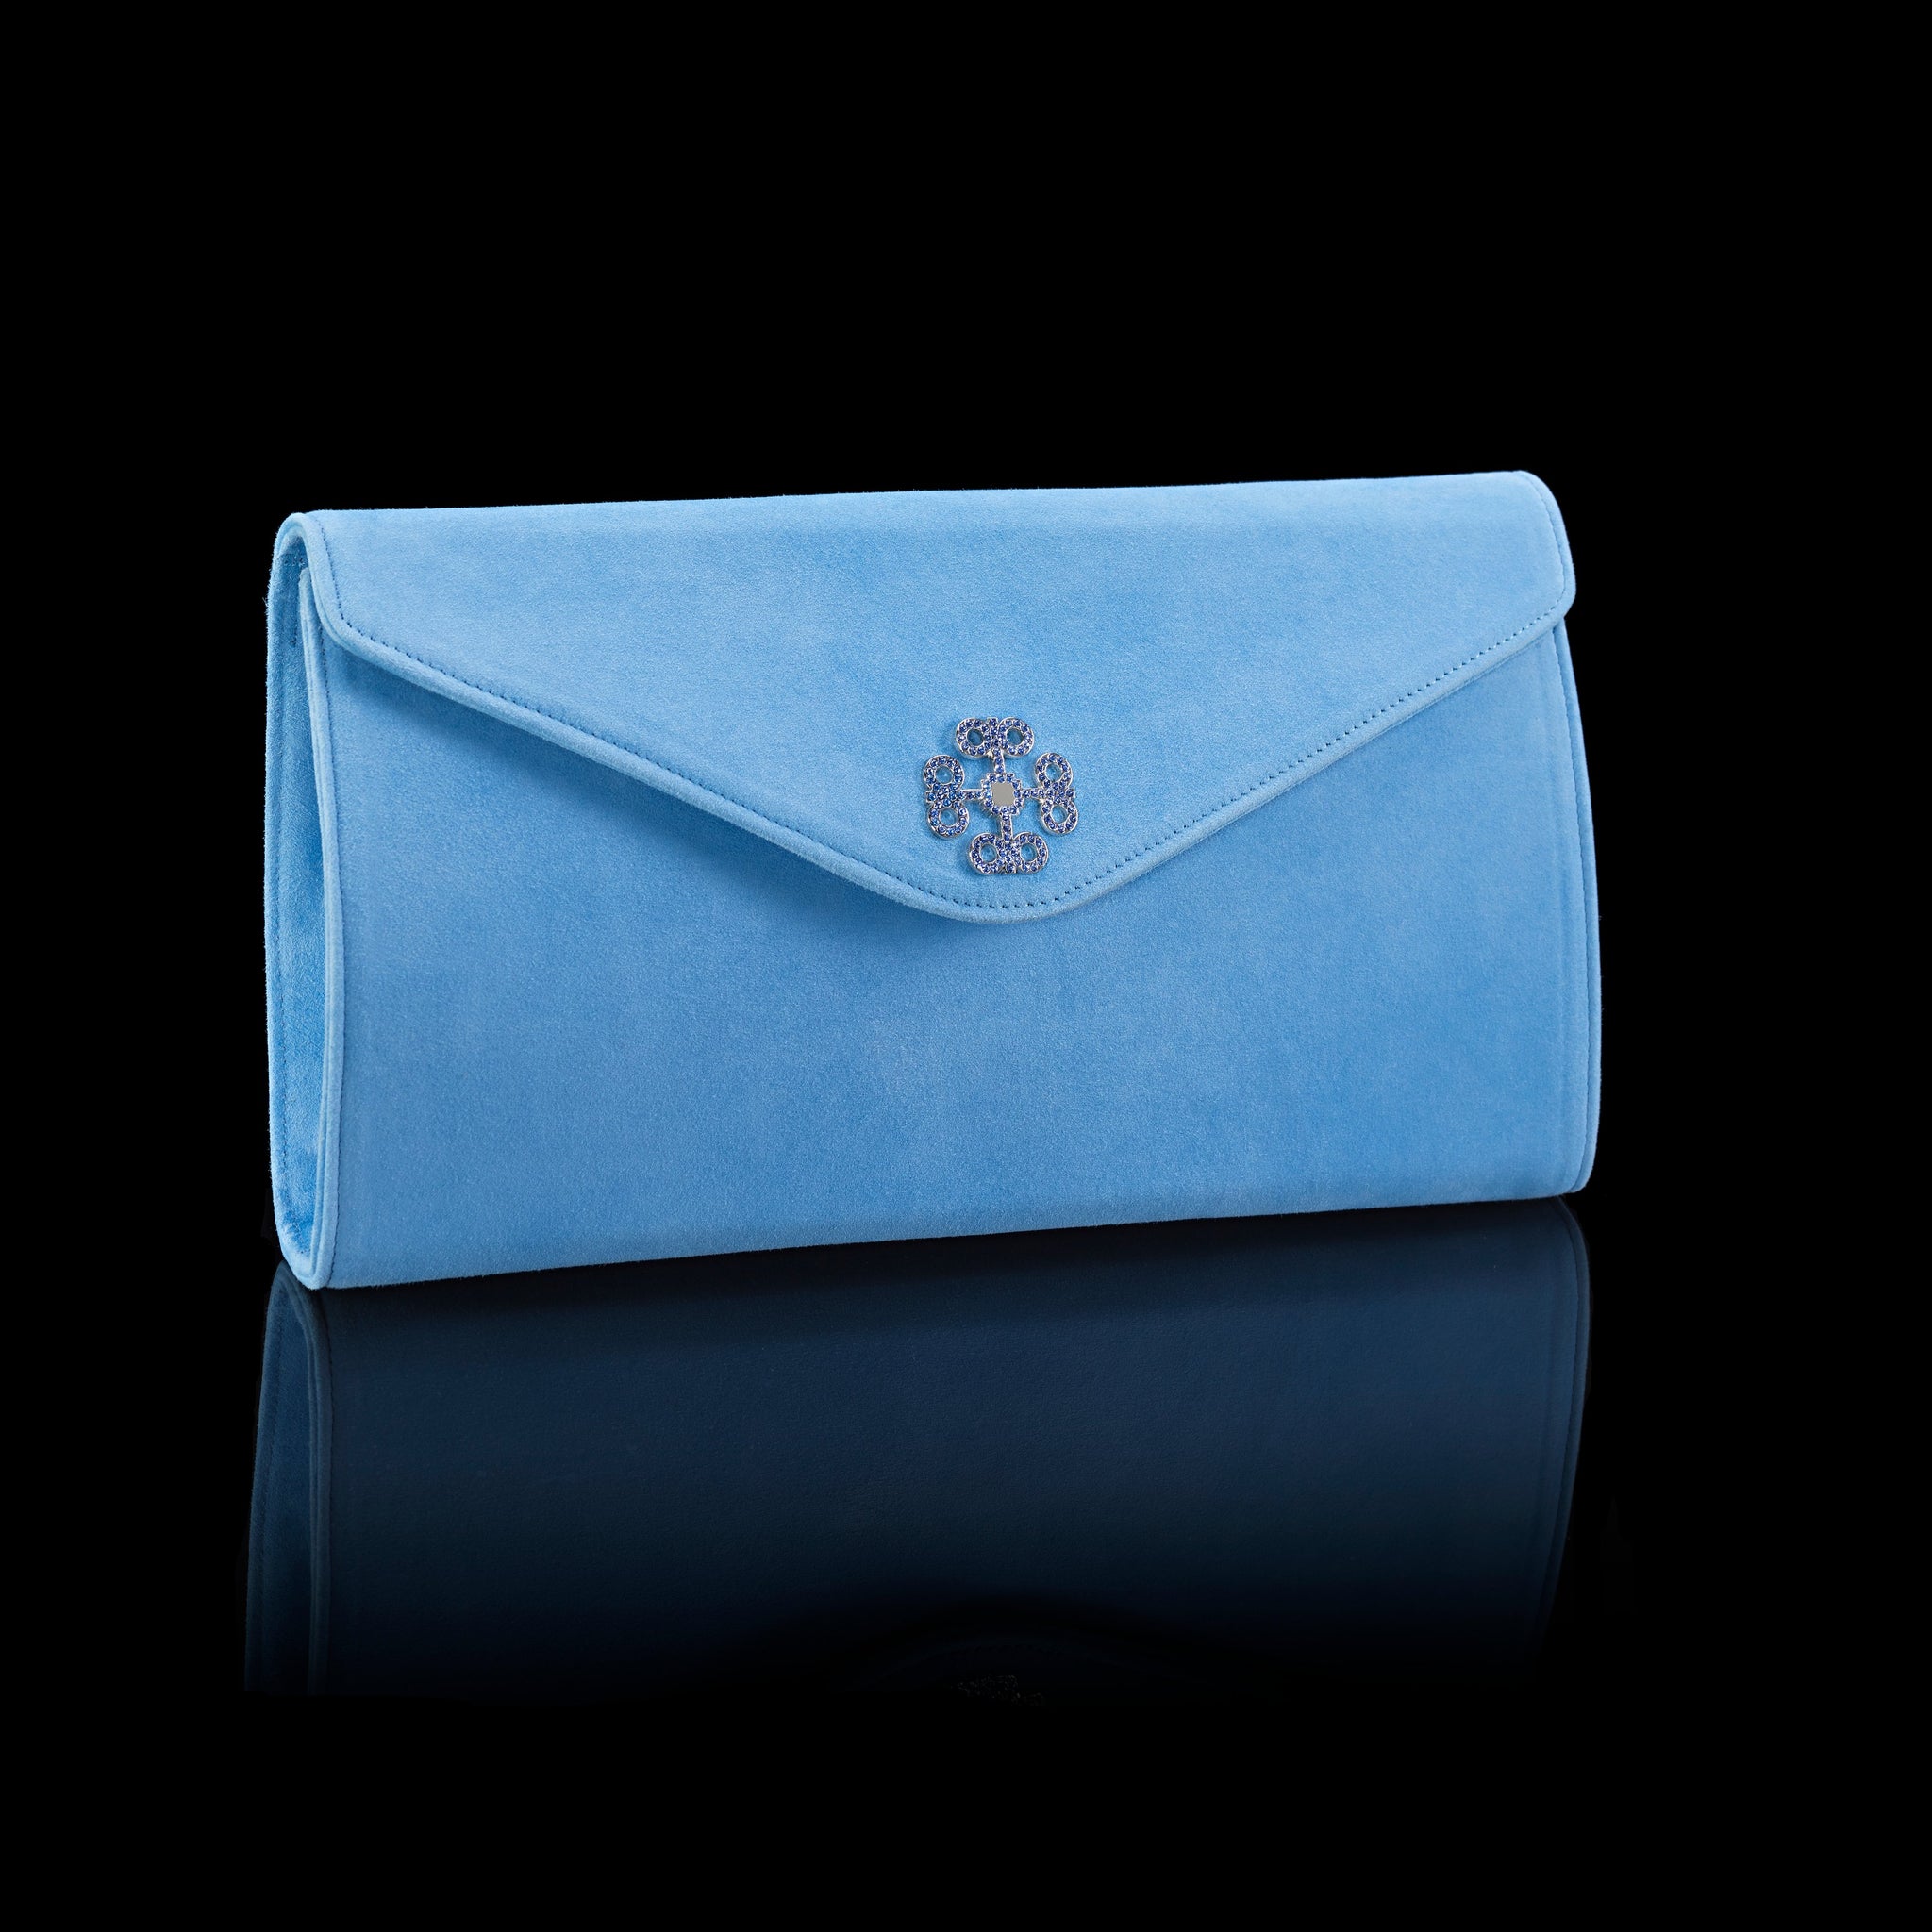 Small Handbag Sky Blue Colour Whit Grey Flower Design. – lakshya bags